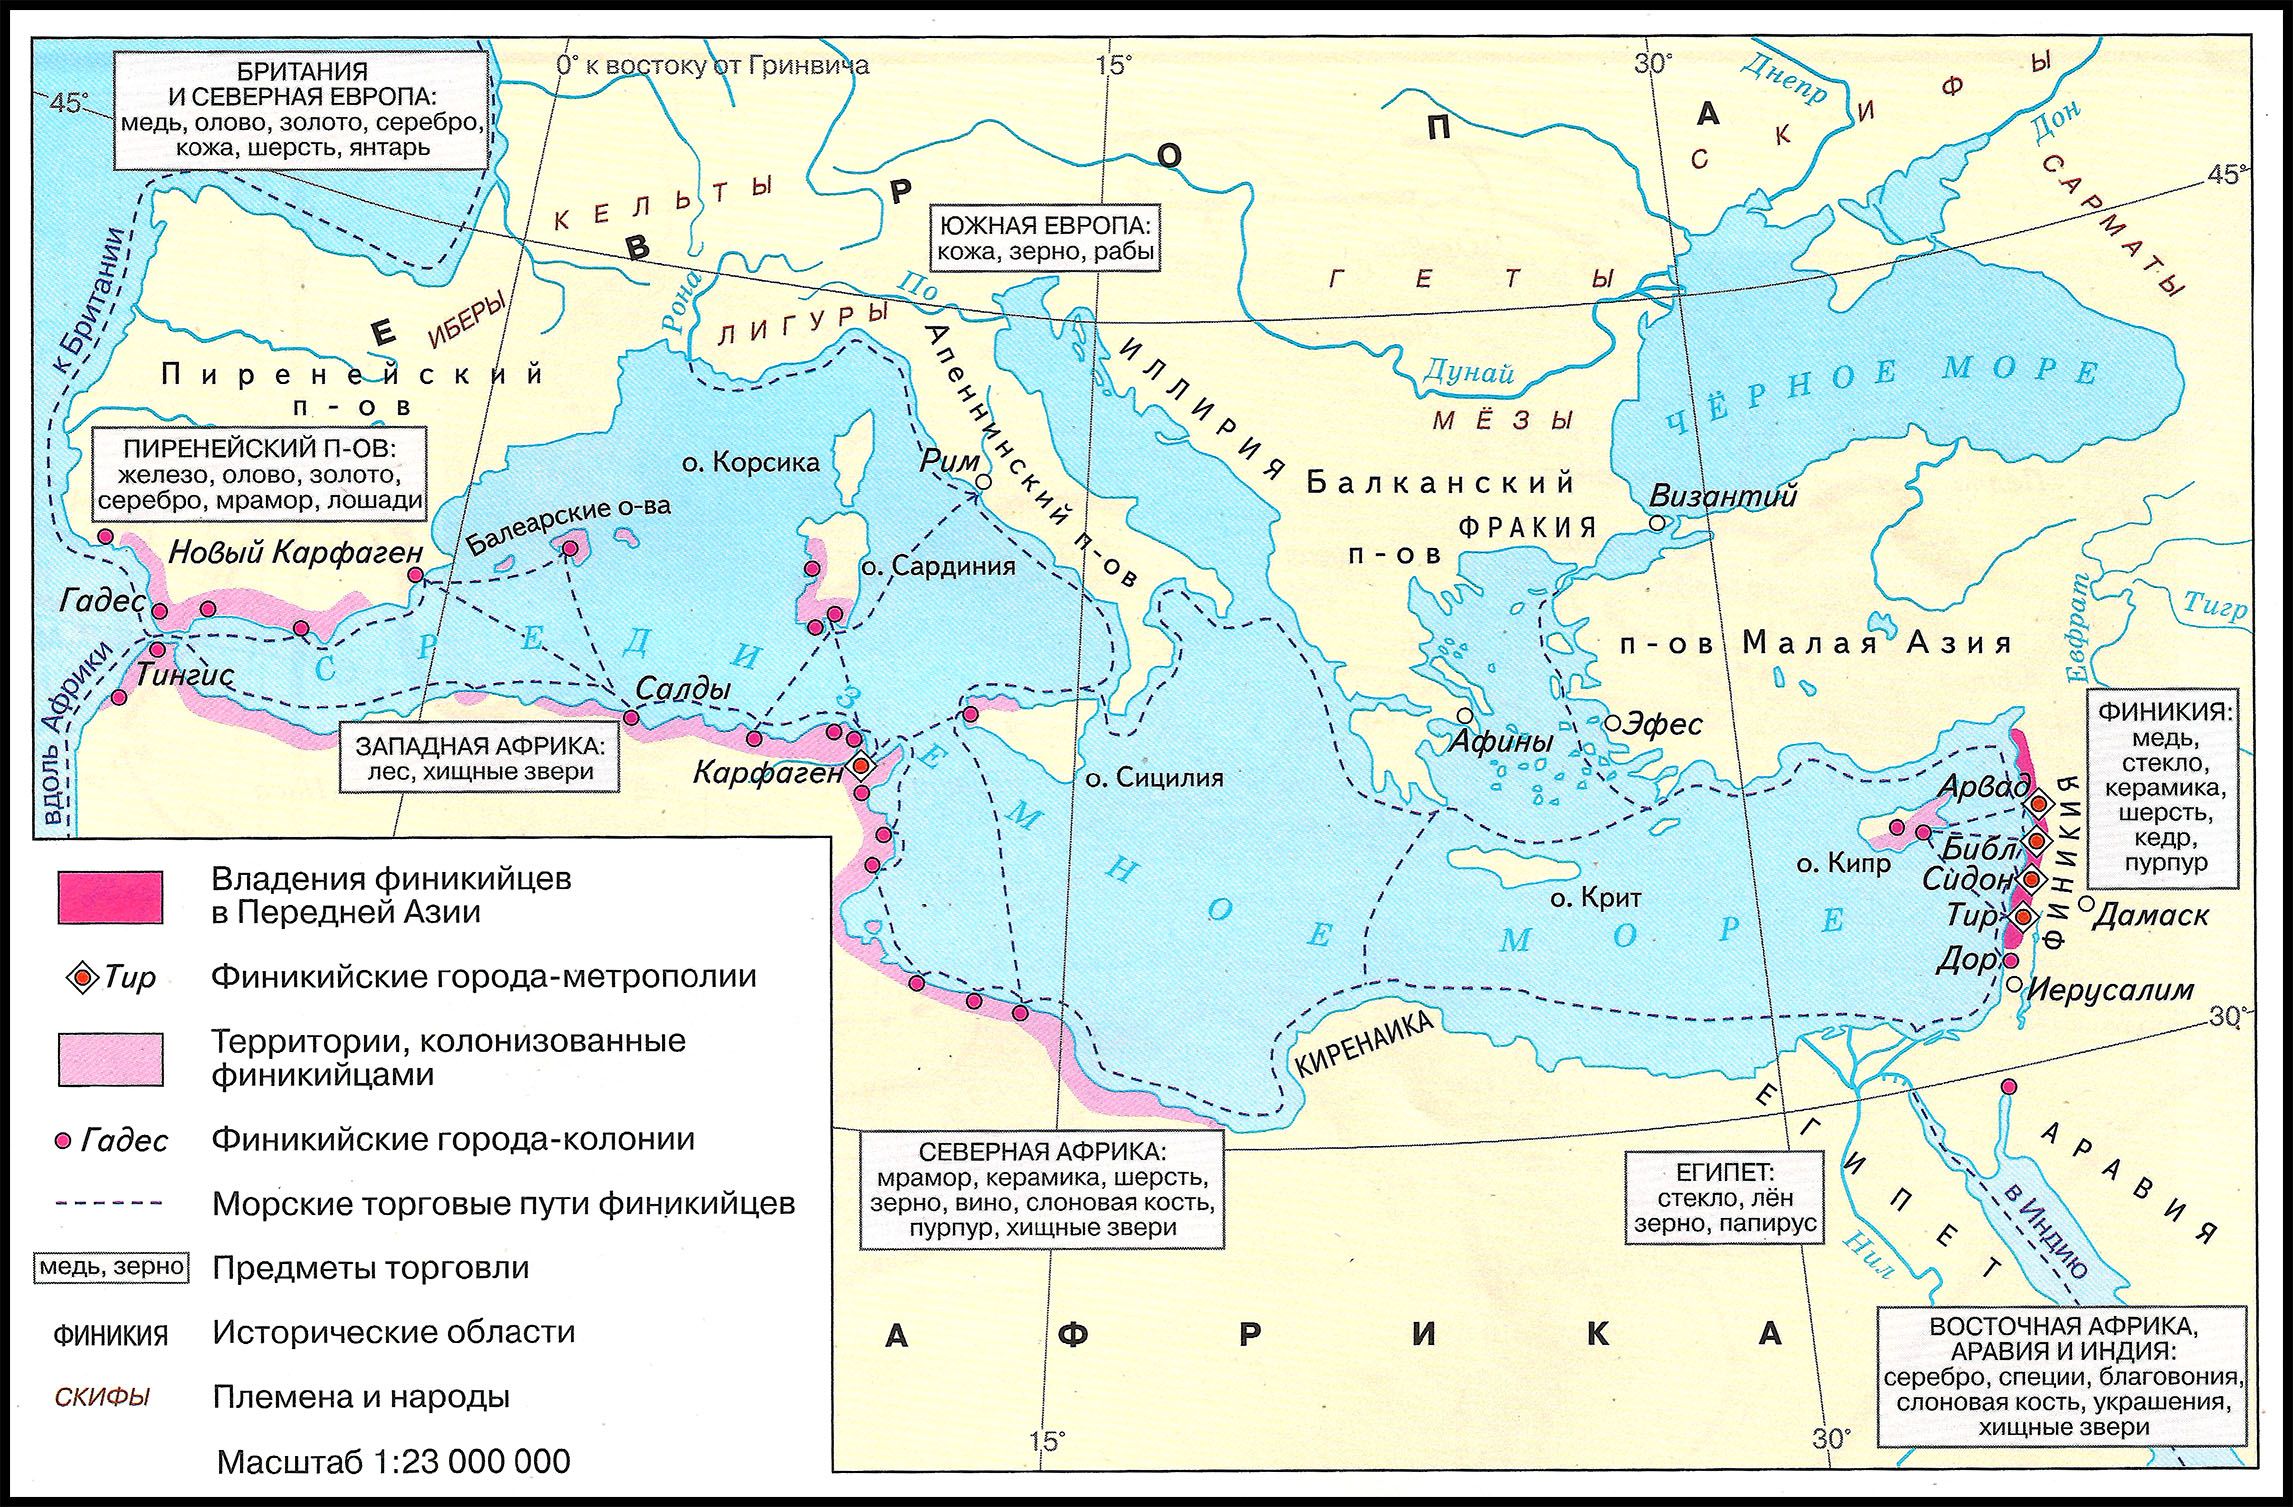 Финикийская колонизация и торговля, 800-600 гг. до н.э.